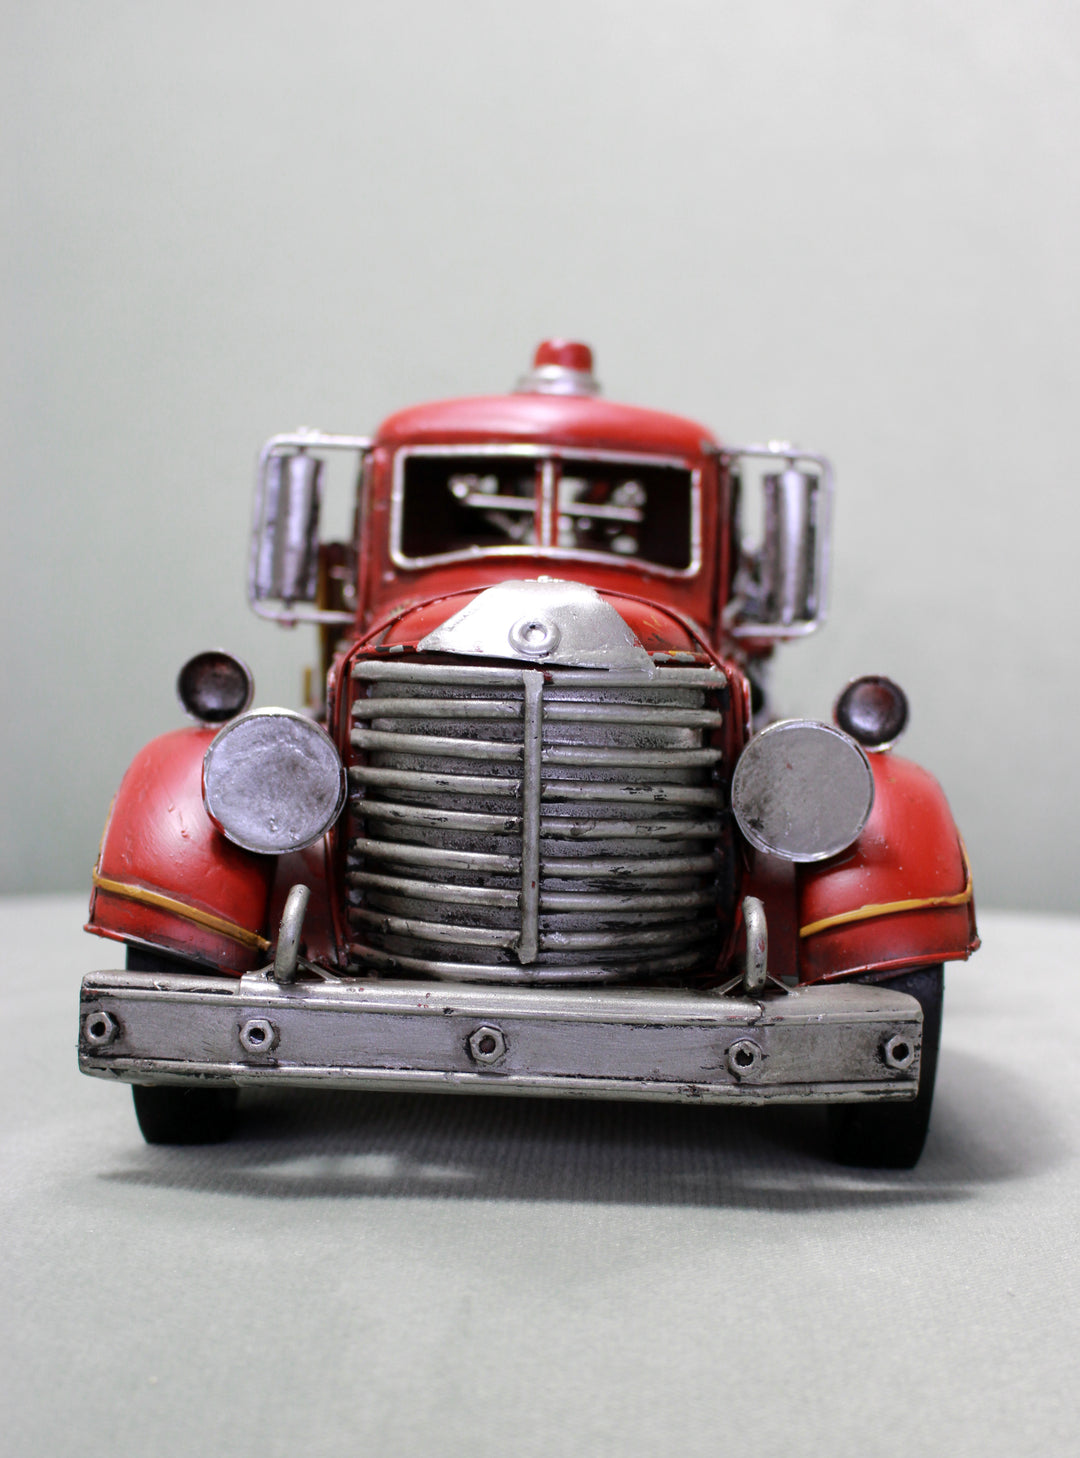 Fire Truck Model - Vintage Fire Engine - Retro American Fire Truck